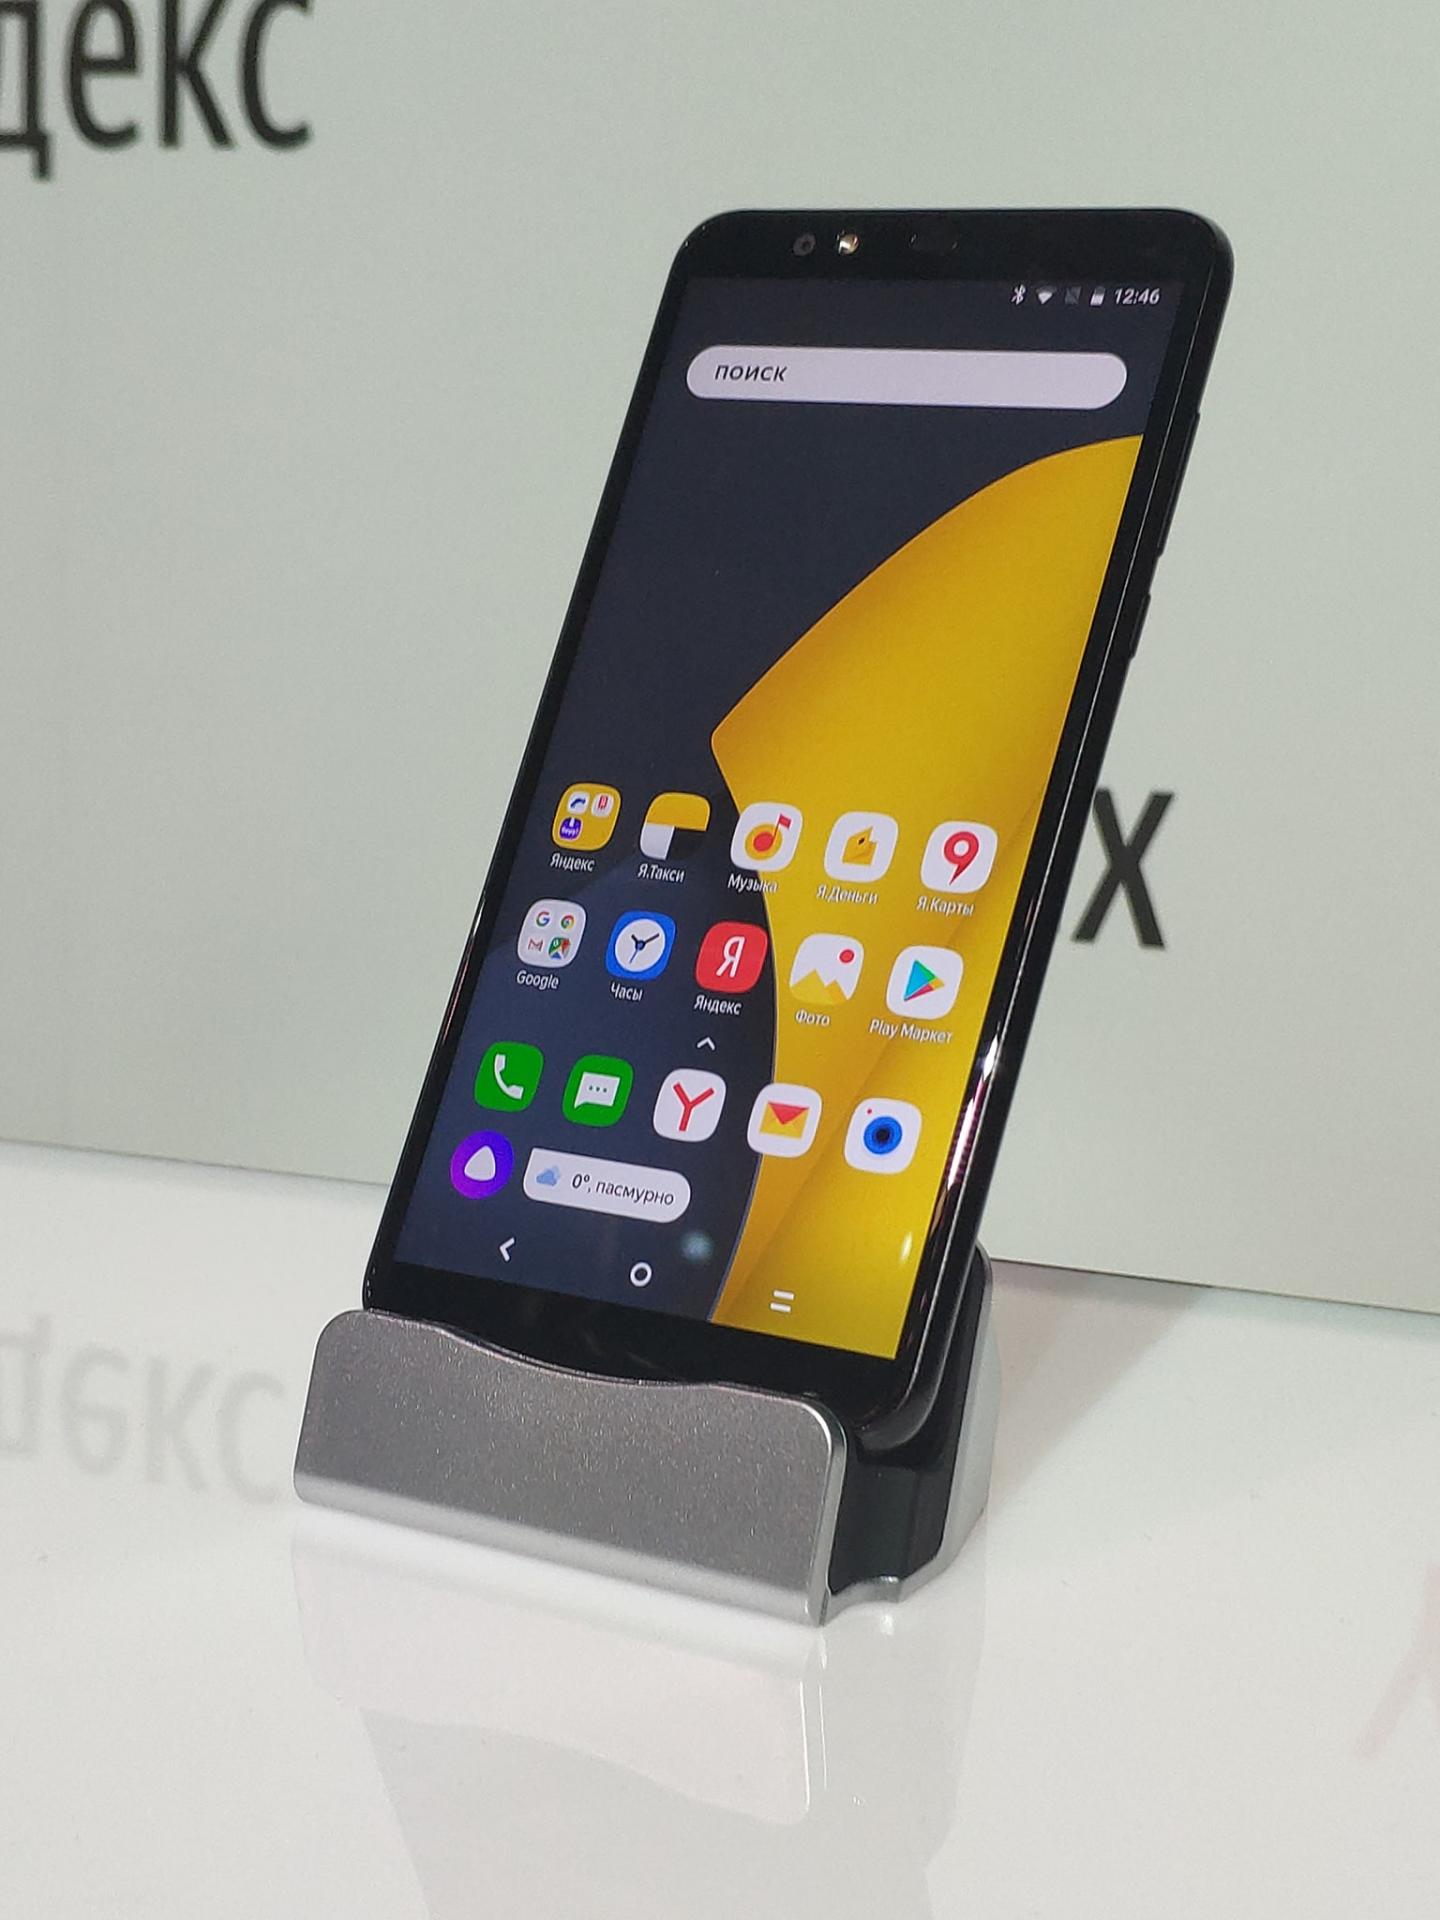 Яндекс телефон стал реальностью. Вы бы такой купили?